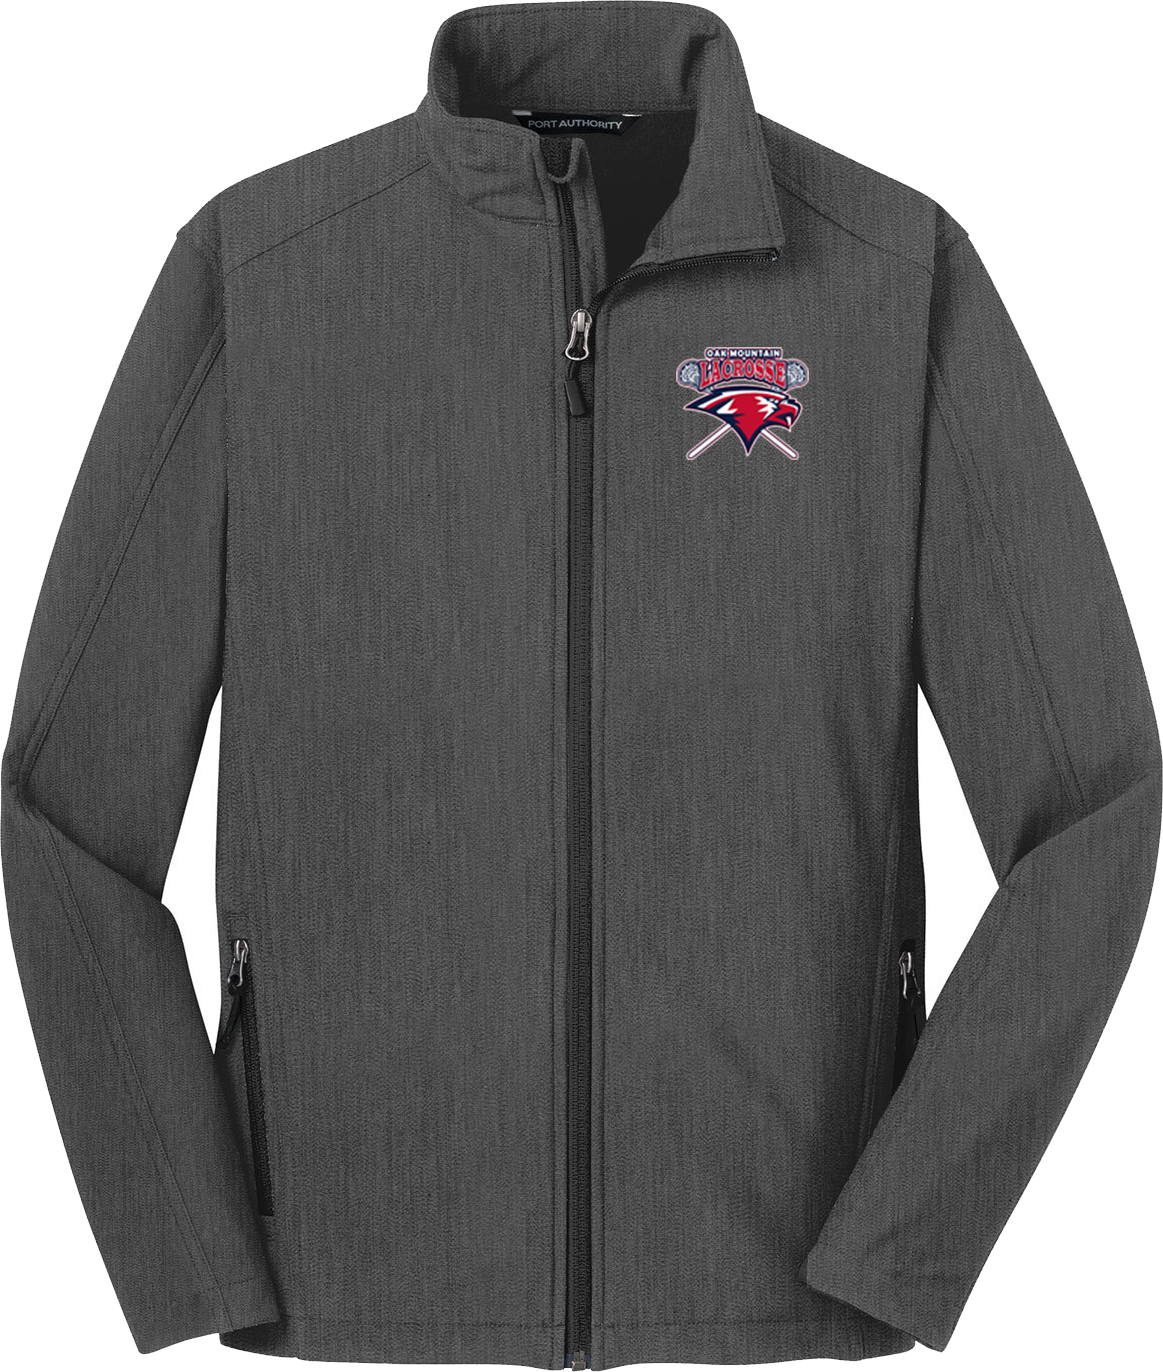 Oak Mtn. Lacrosse Soft Shell Jacket